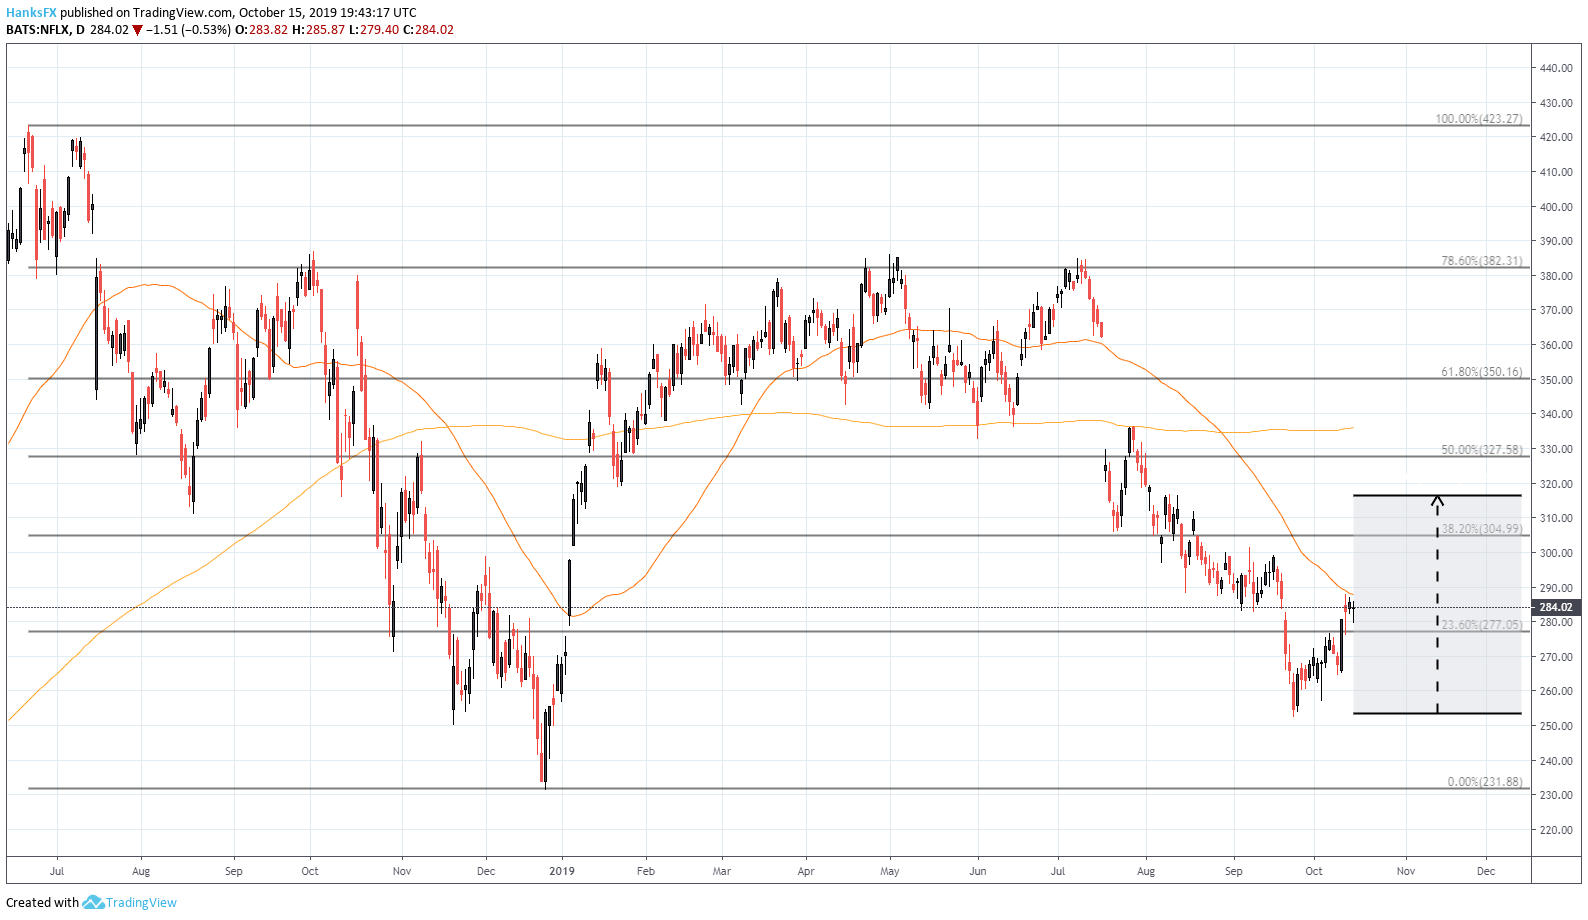 netflix stock price